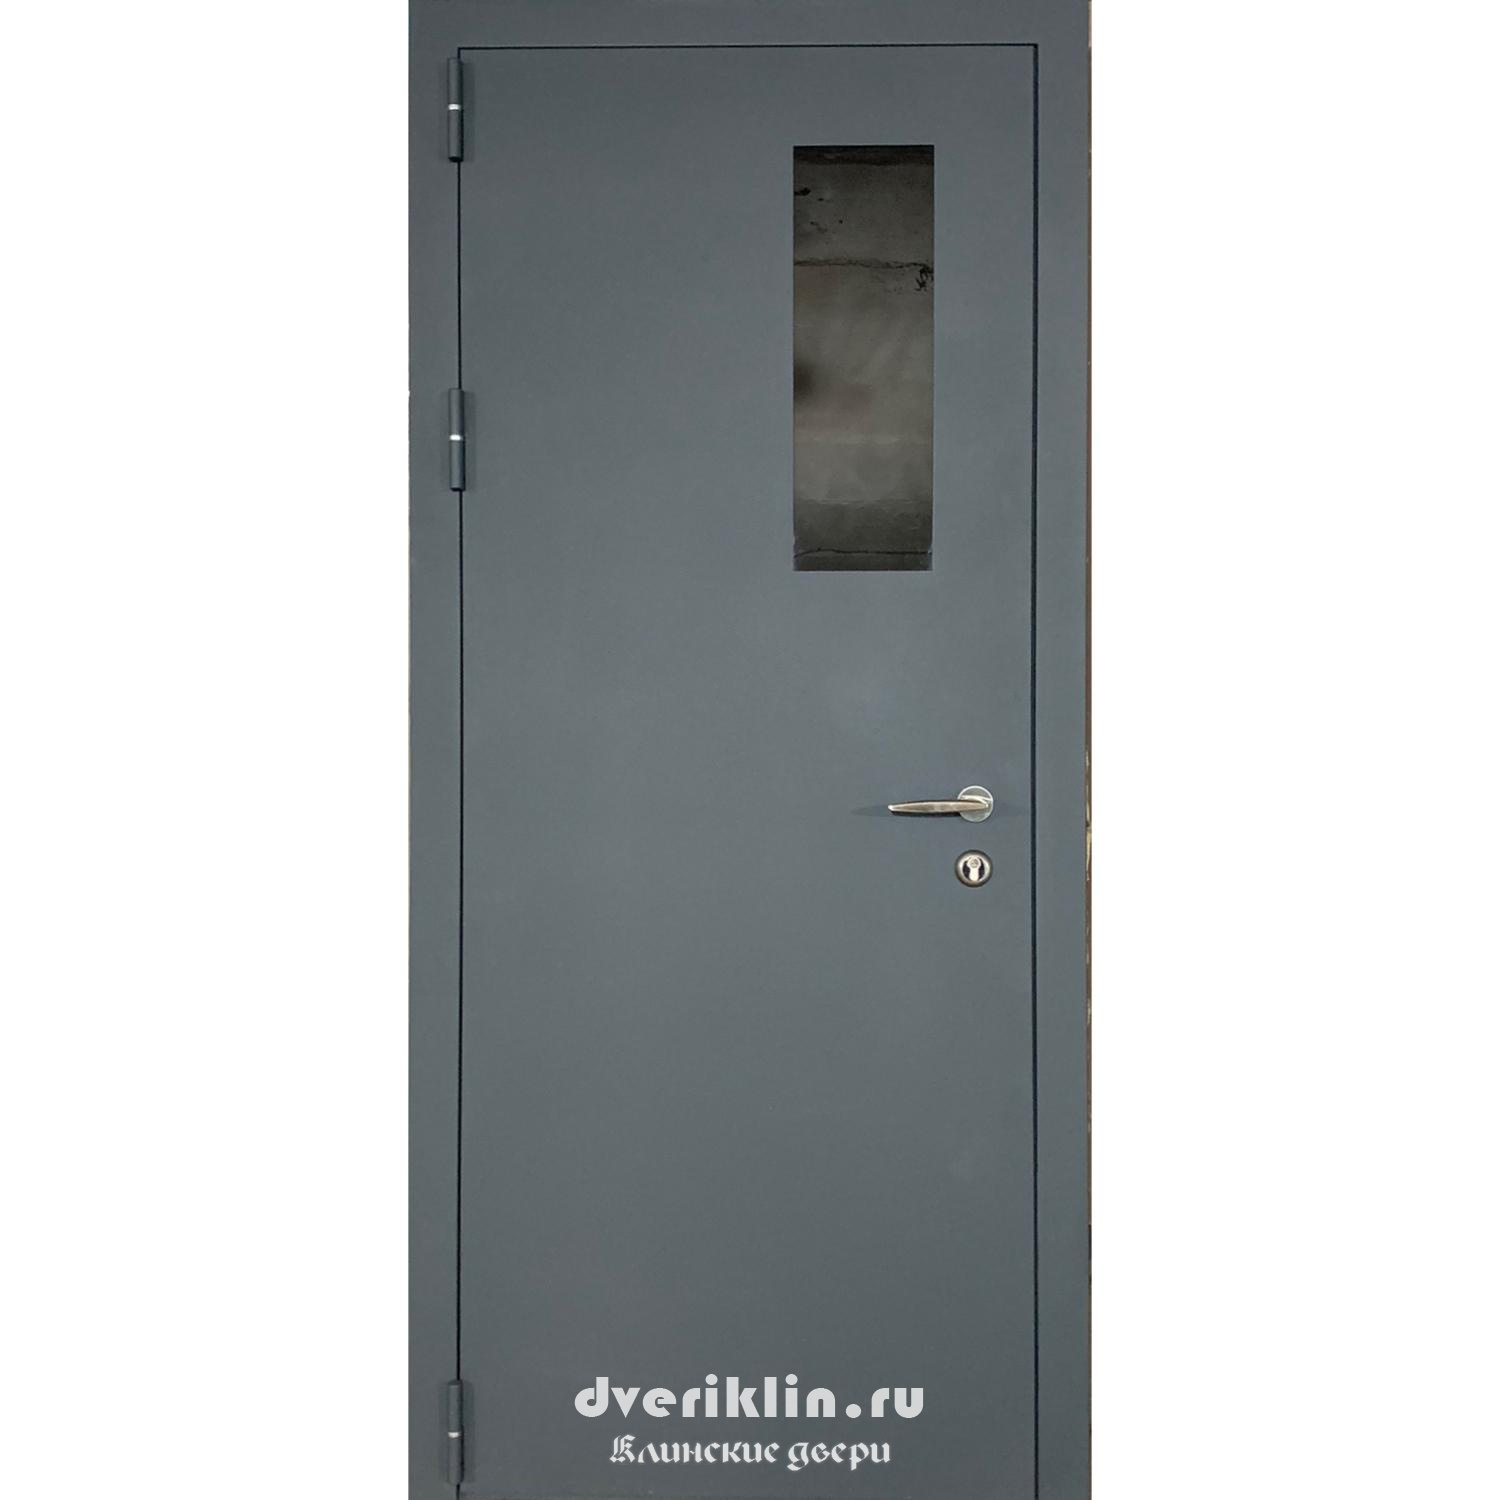 Техническая дверь TH-49 (Технические)